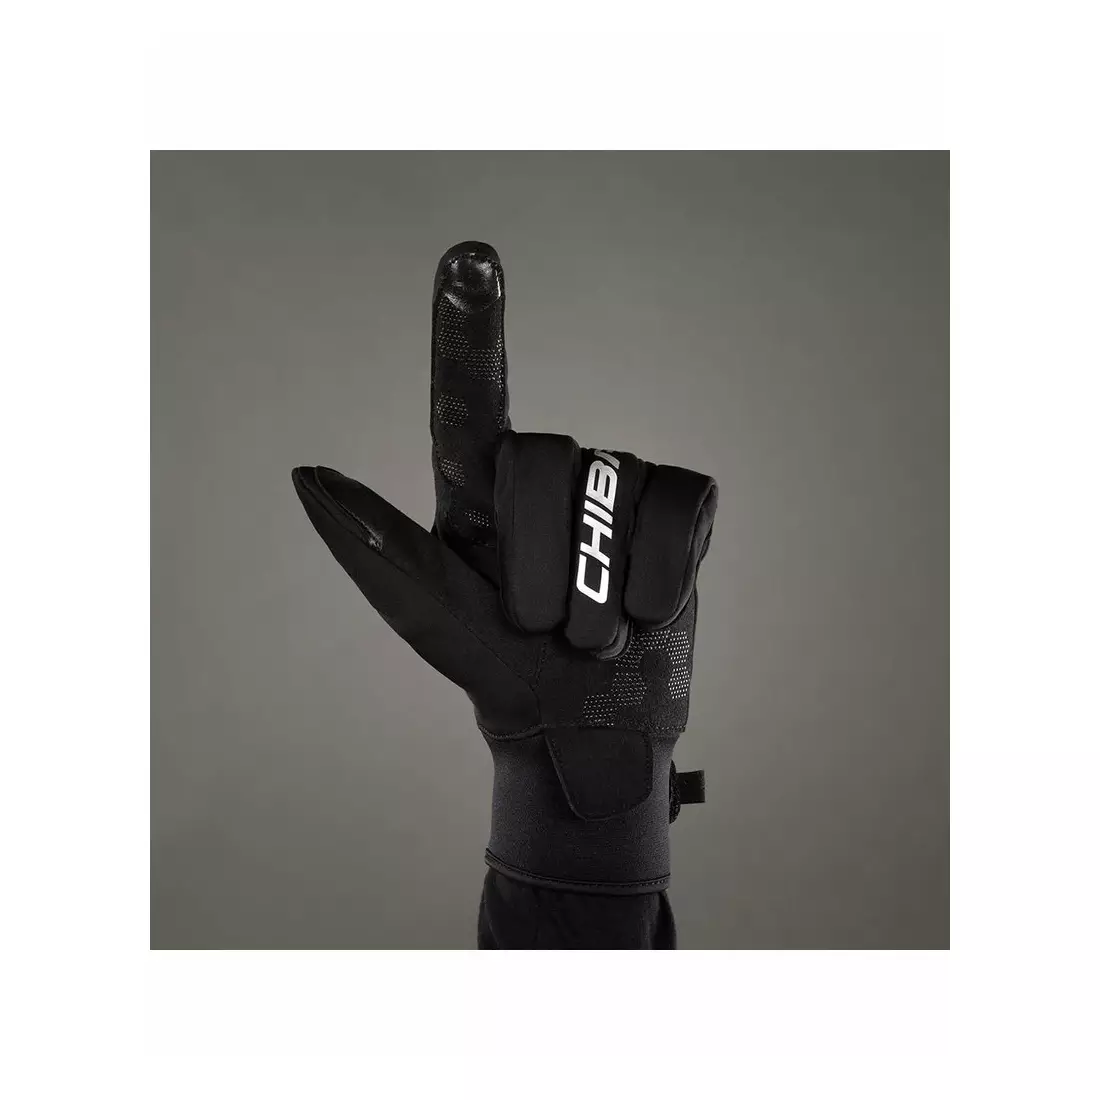 CHIBA CLASSIC warm winter bicycle gloves, schwarz und silber